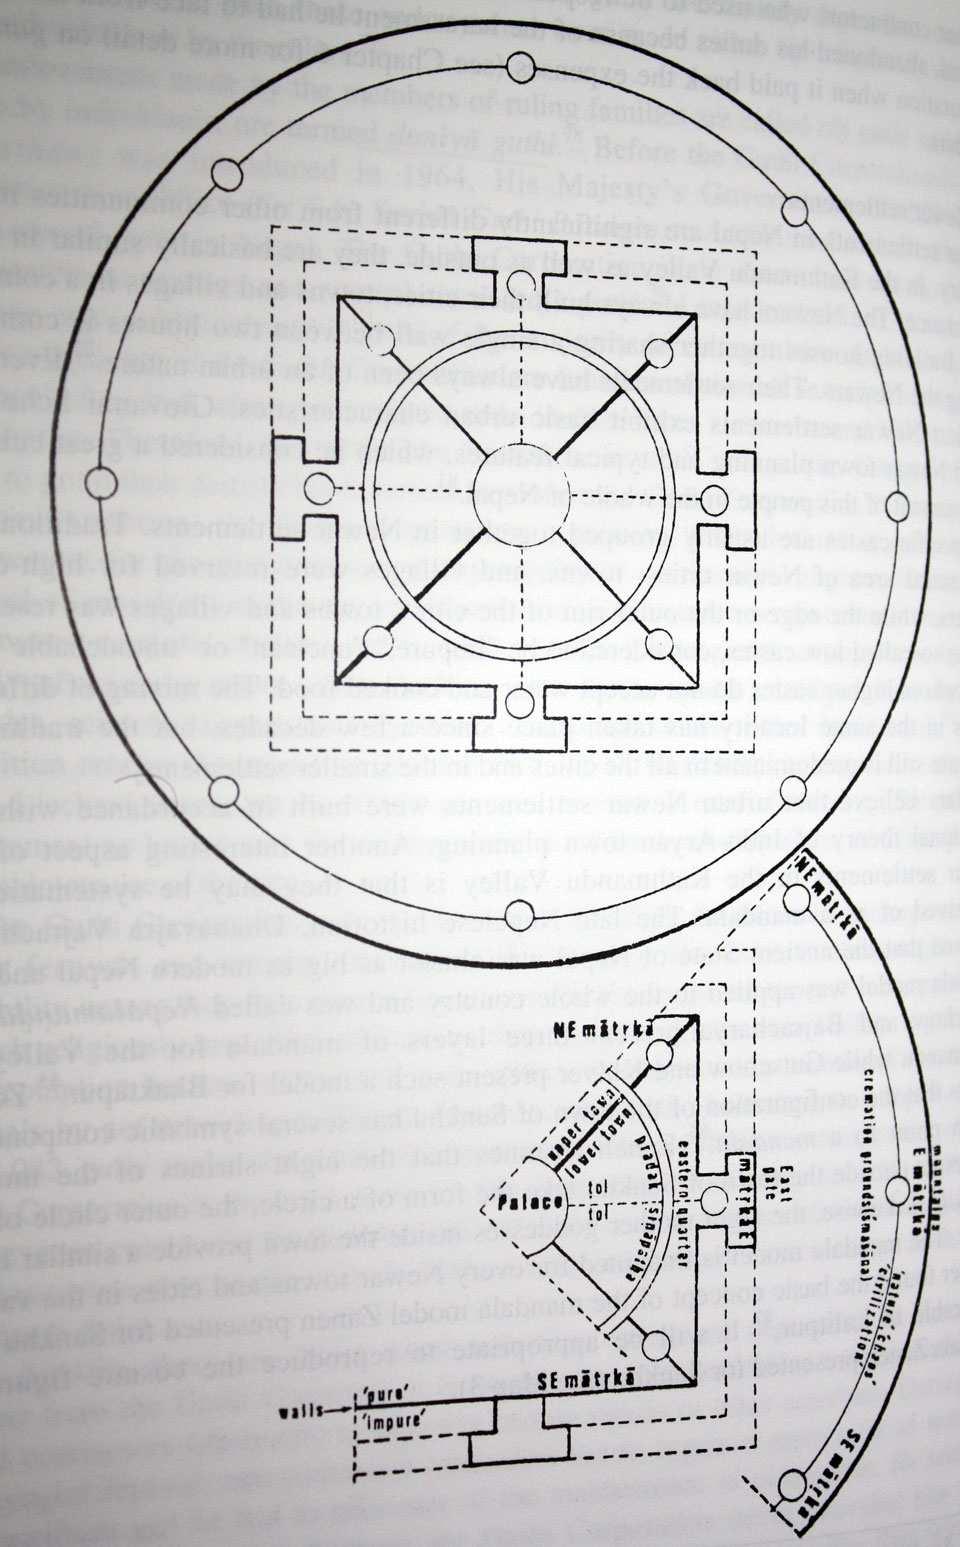 Appendix III - Newar Settlement patterns the Mandala Design 3.